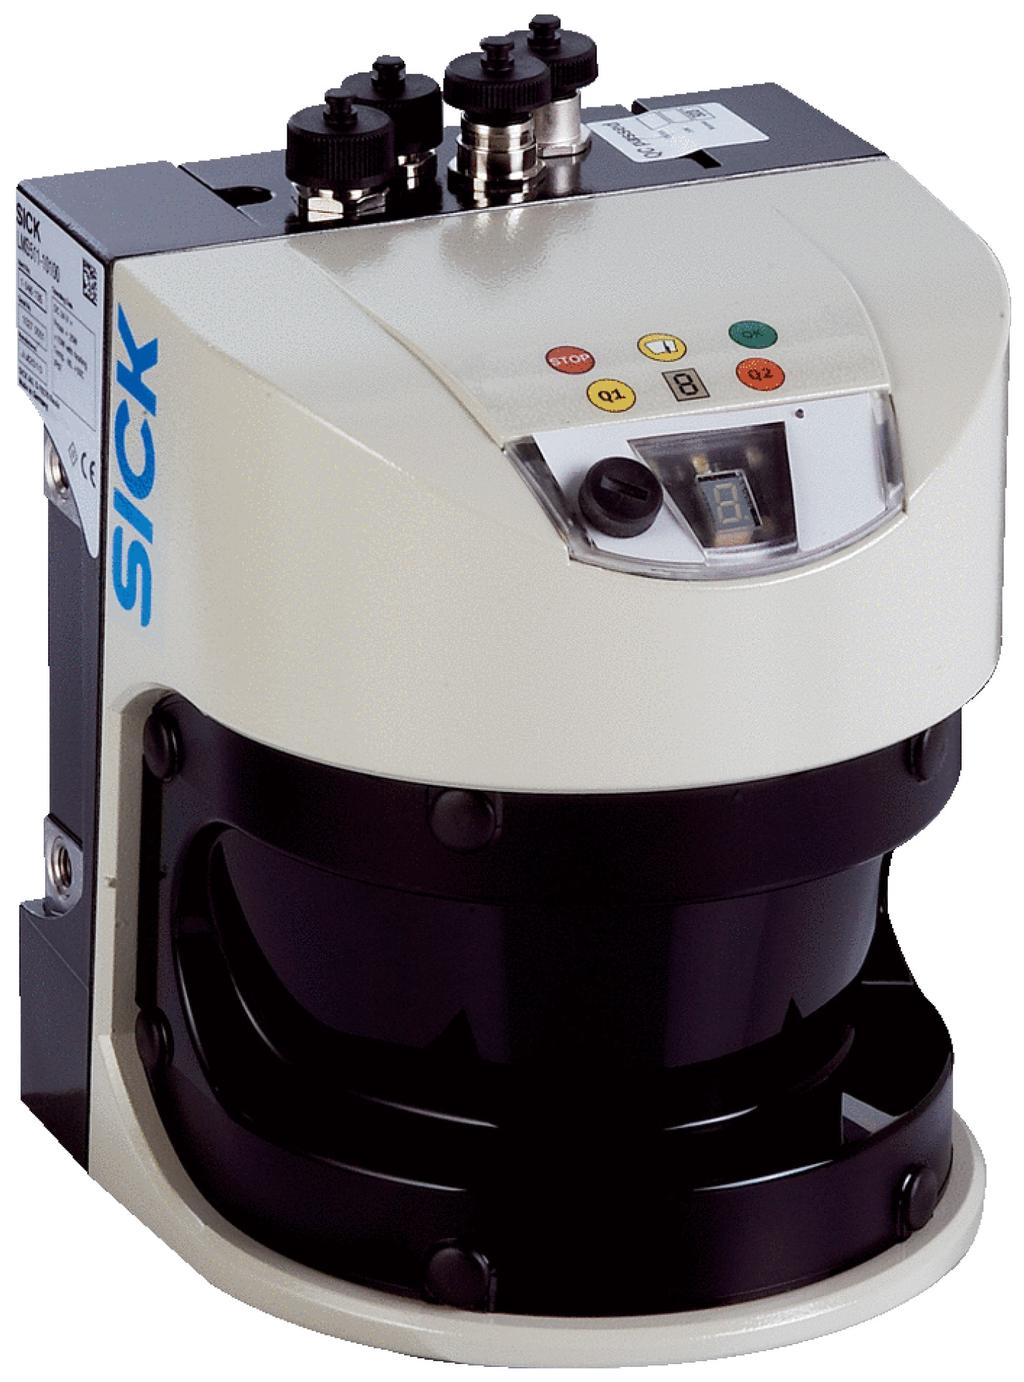 Laserový senzor S ohledem na požadavky (vysoce) spolehlivé KVP byl zvolen jiný fyzikální princip využívající laserový senzor (LMS511).